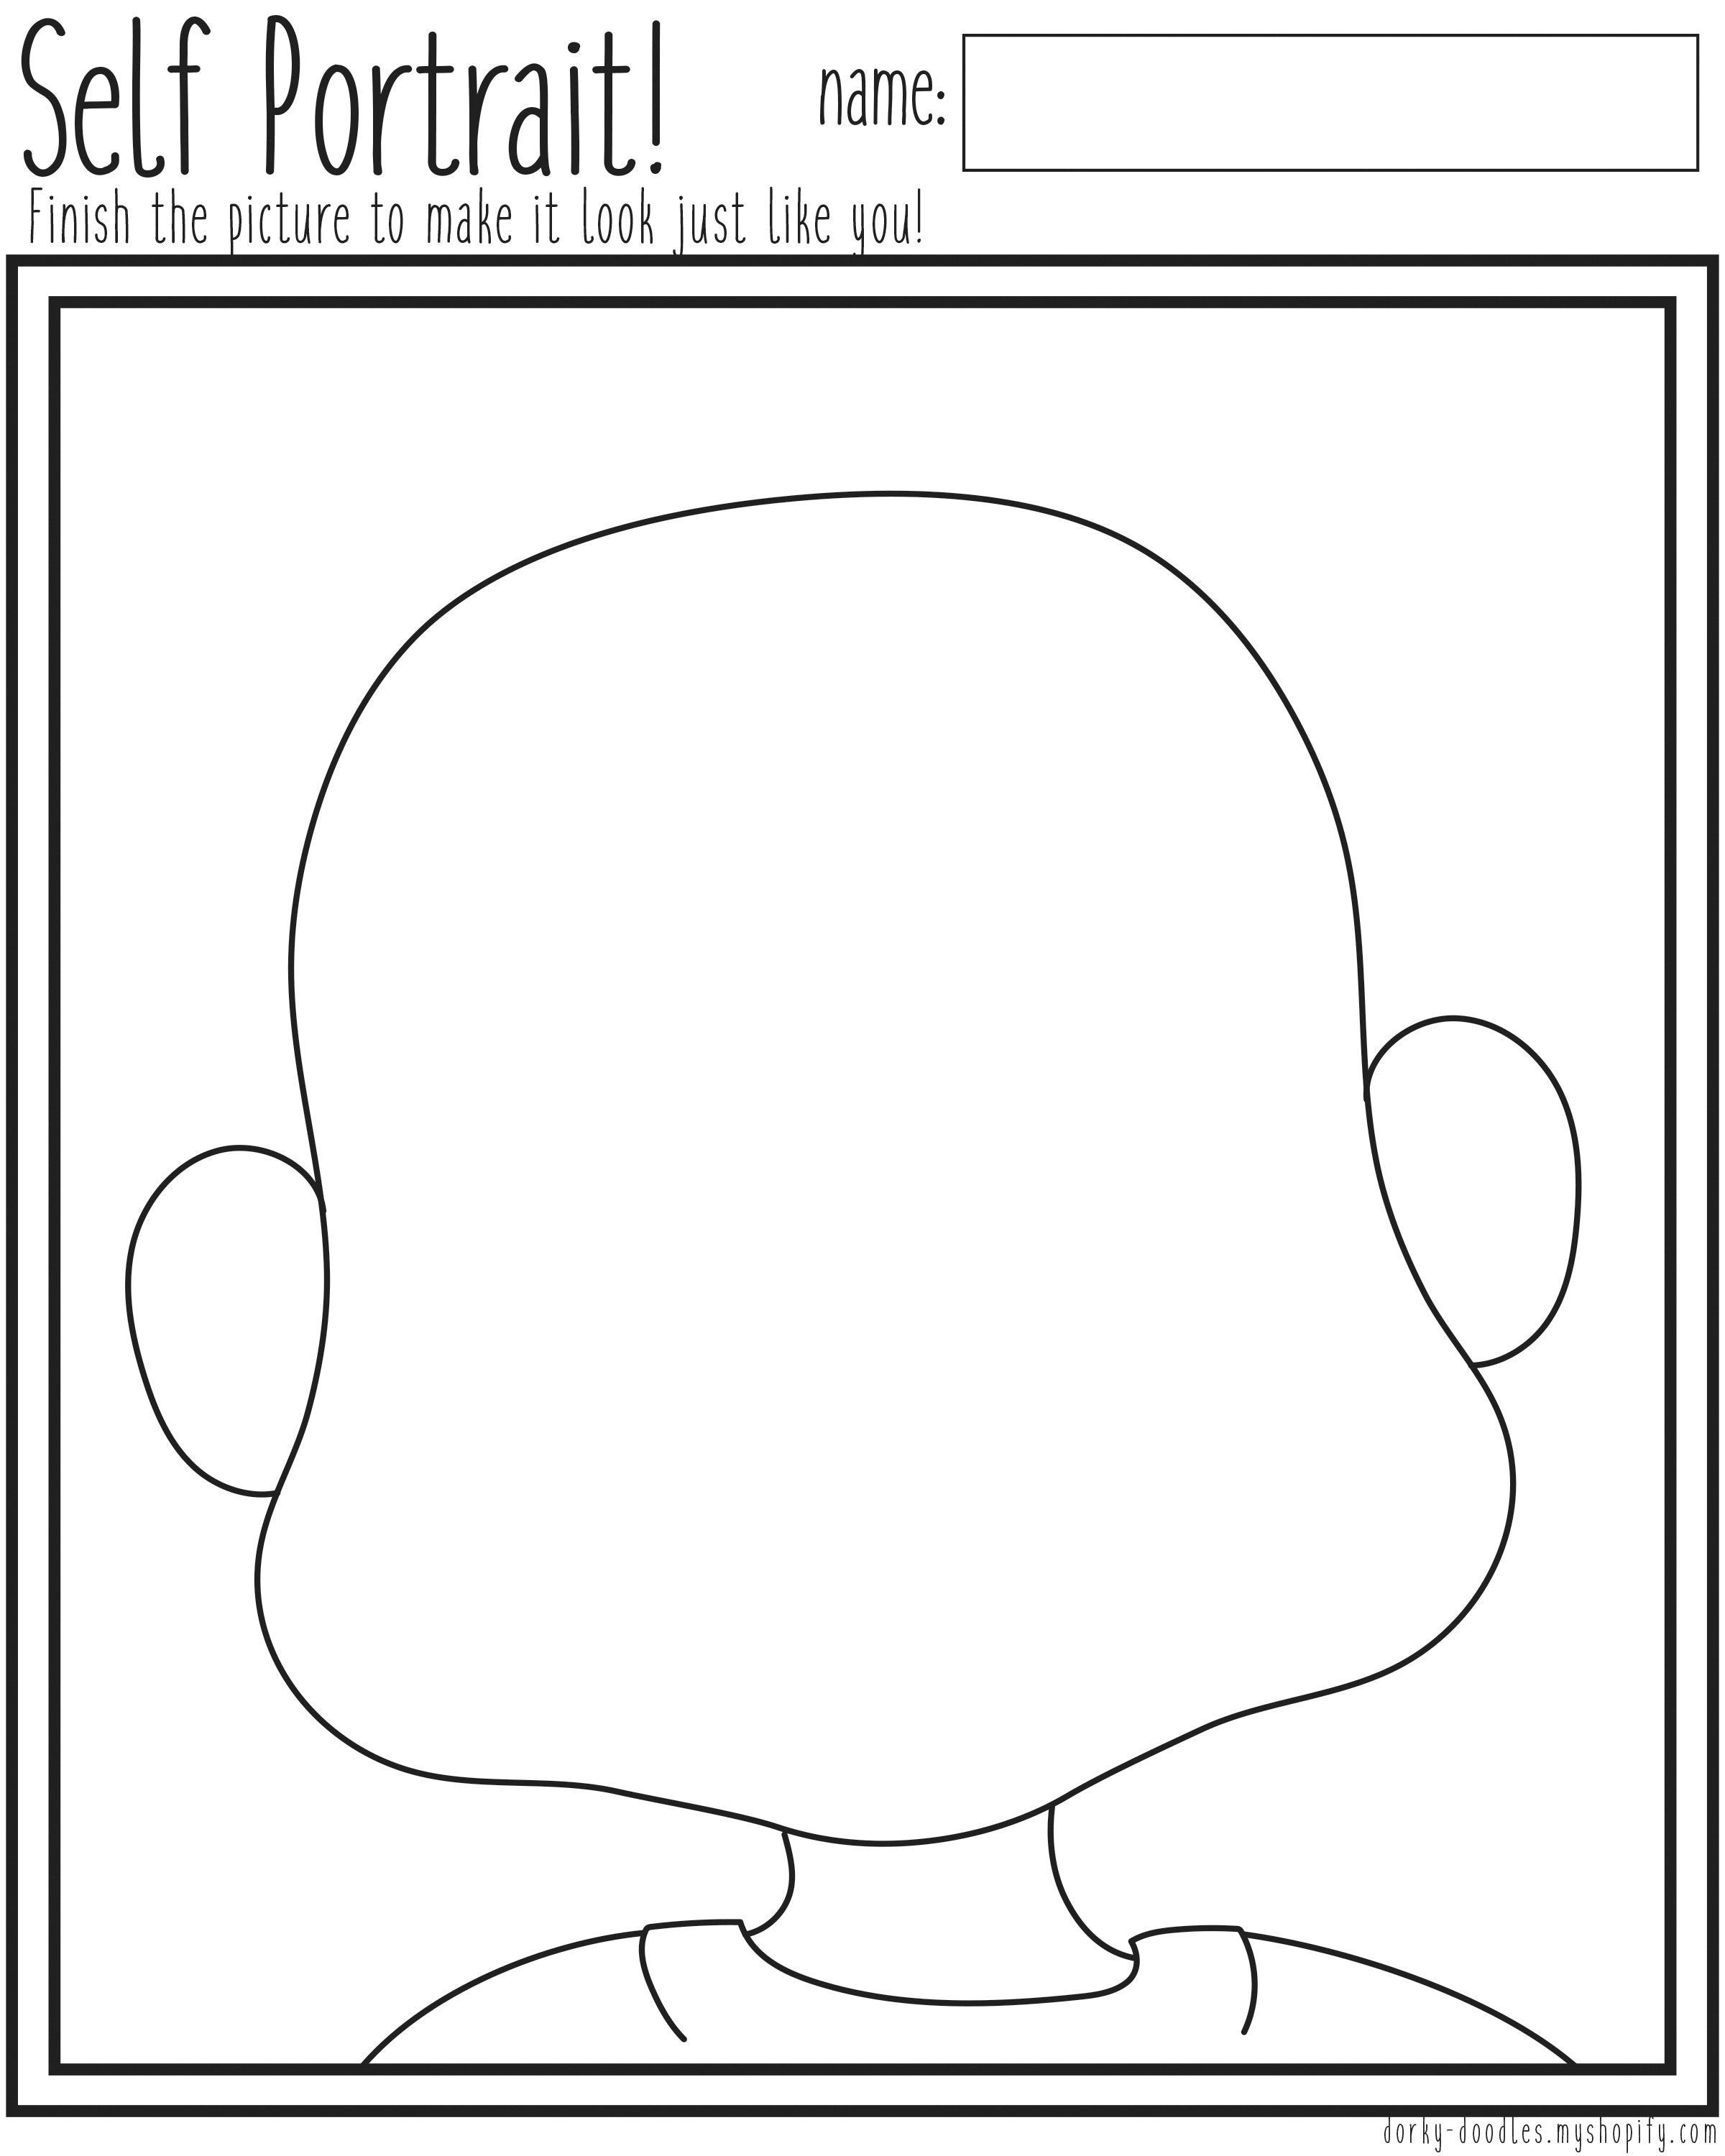 Self Portrait Printable Worksheet – Dorky Doodles